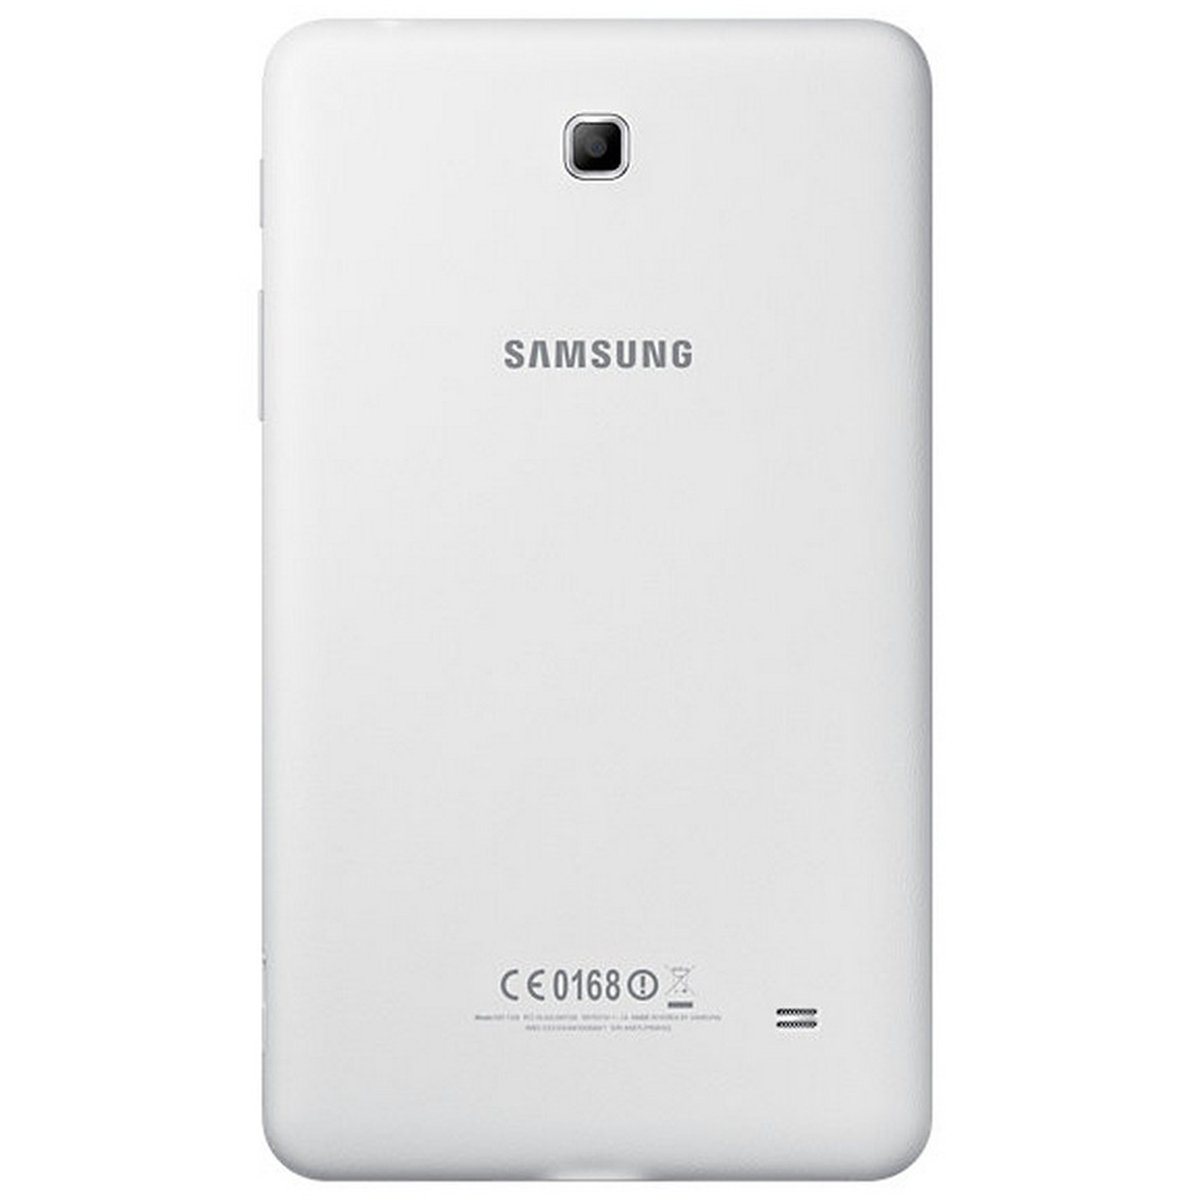 Samsung Galaxy Tab 4 SMT231 3G WiFi 7inch 8GB White